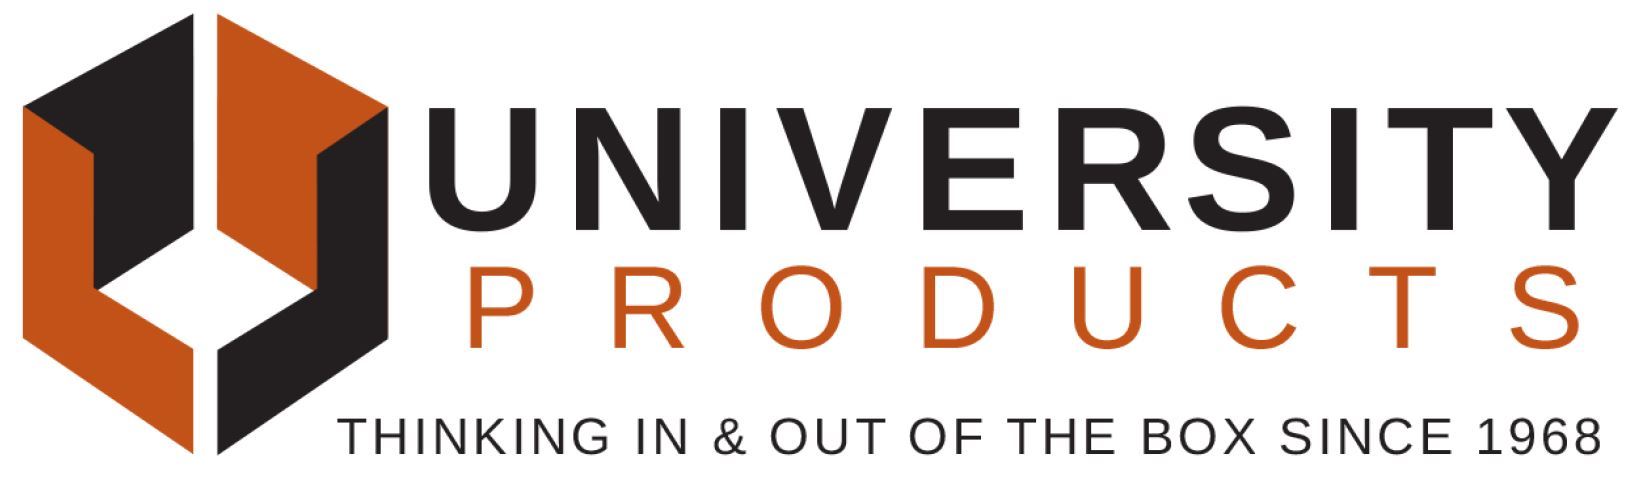 University Products logo.